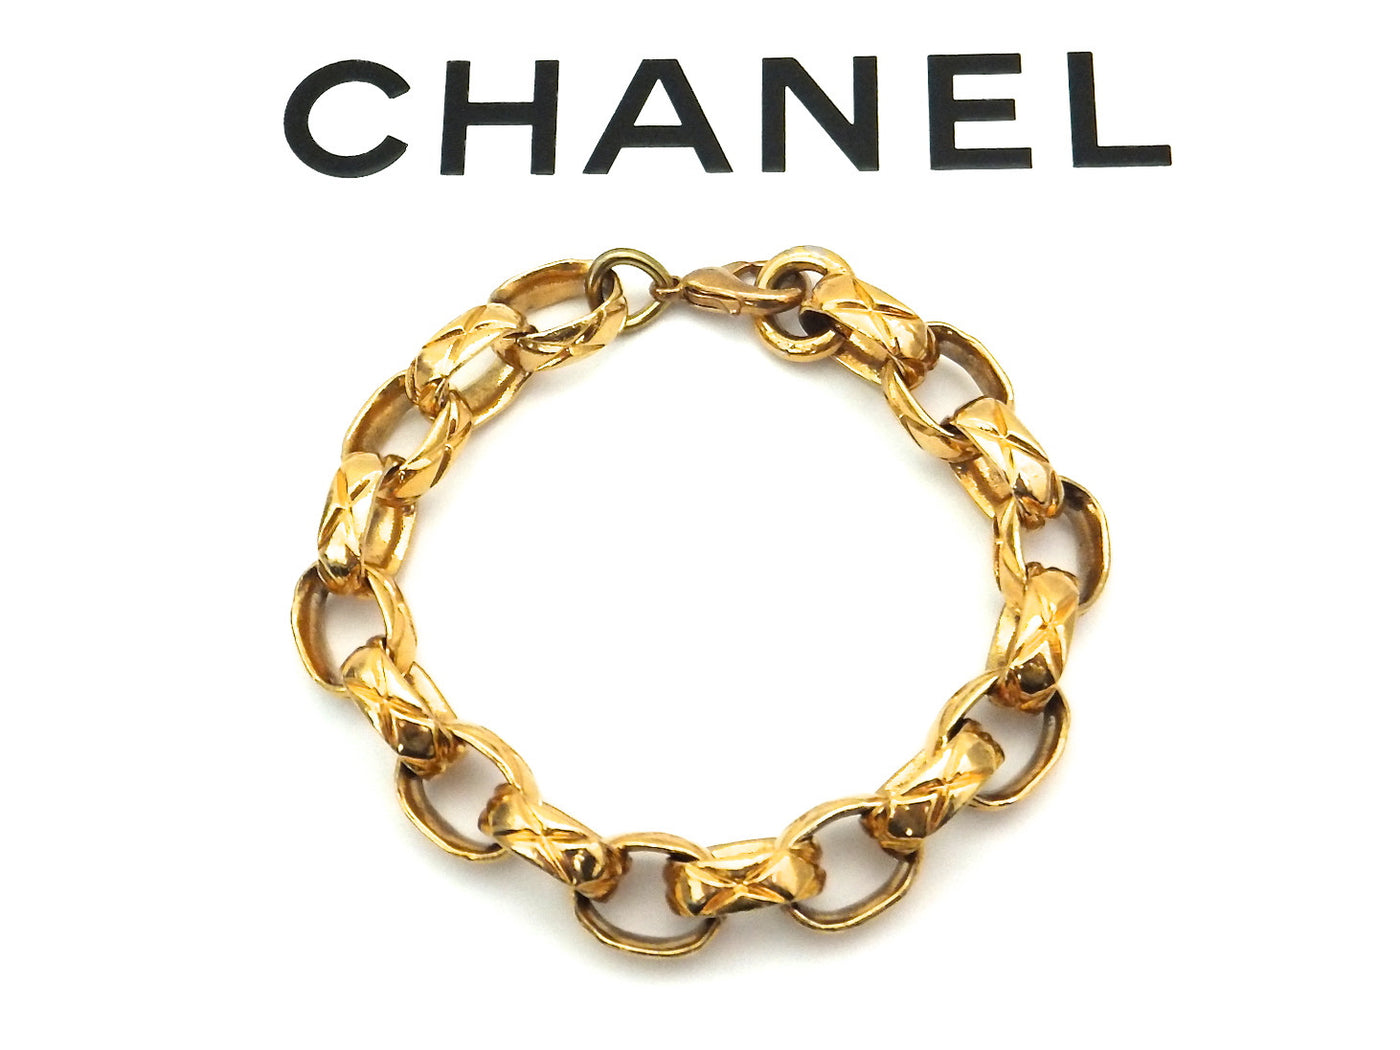 Authentic Chanel Vintage Classic Bracelets